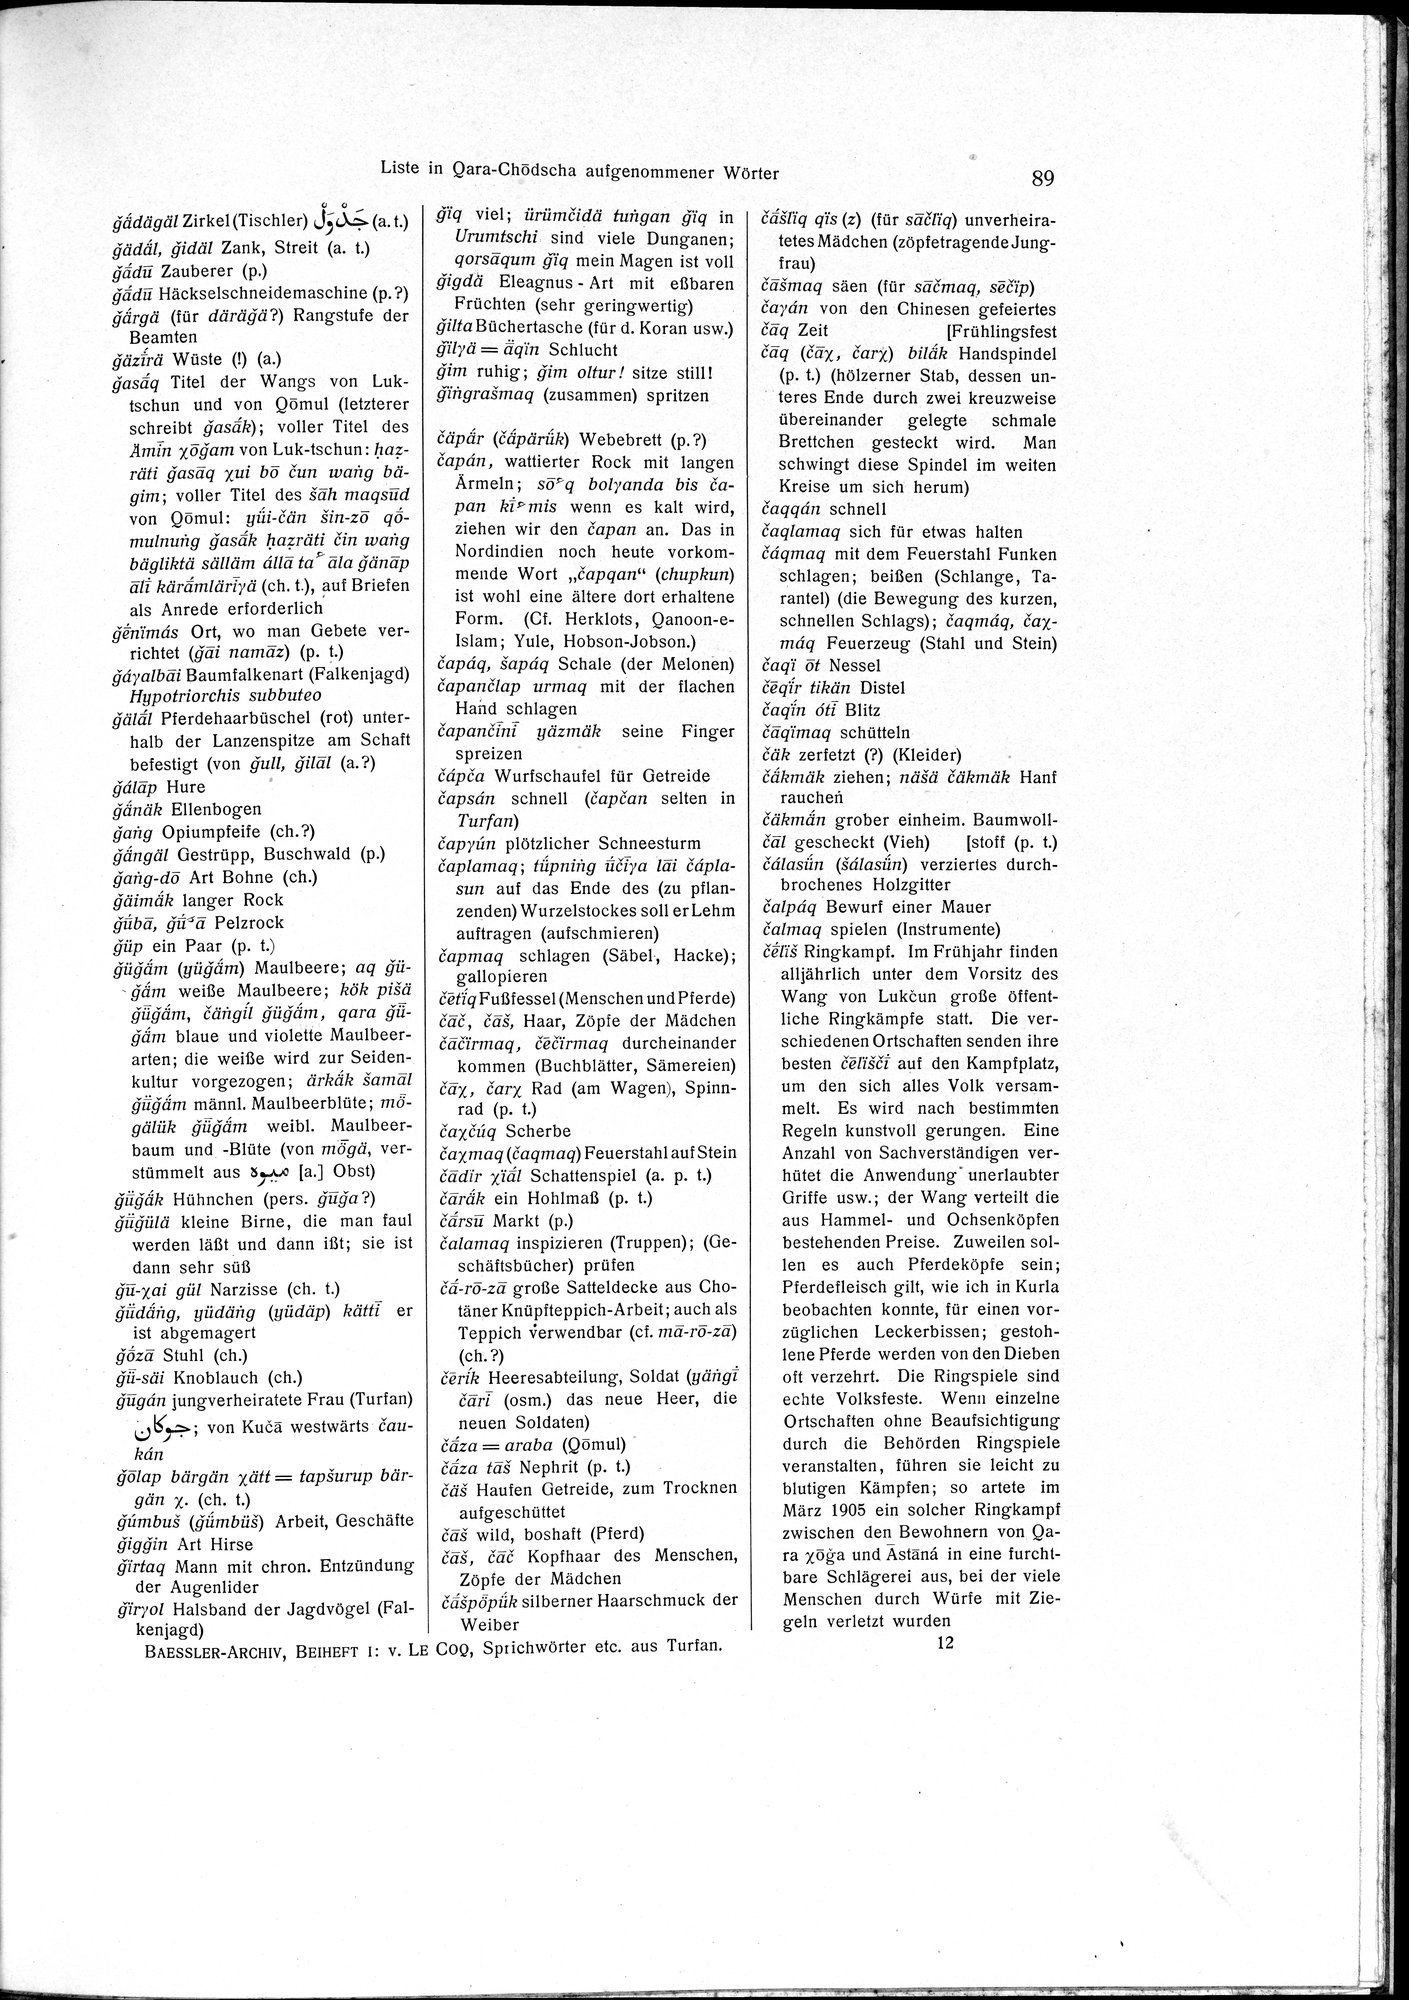 Sprichwörter und Lieder aus der Gegend von Turfan : vol.1 / Page 103 (Grayscale High Resolution Image)